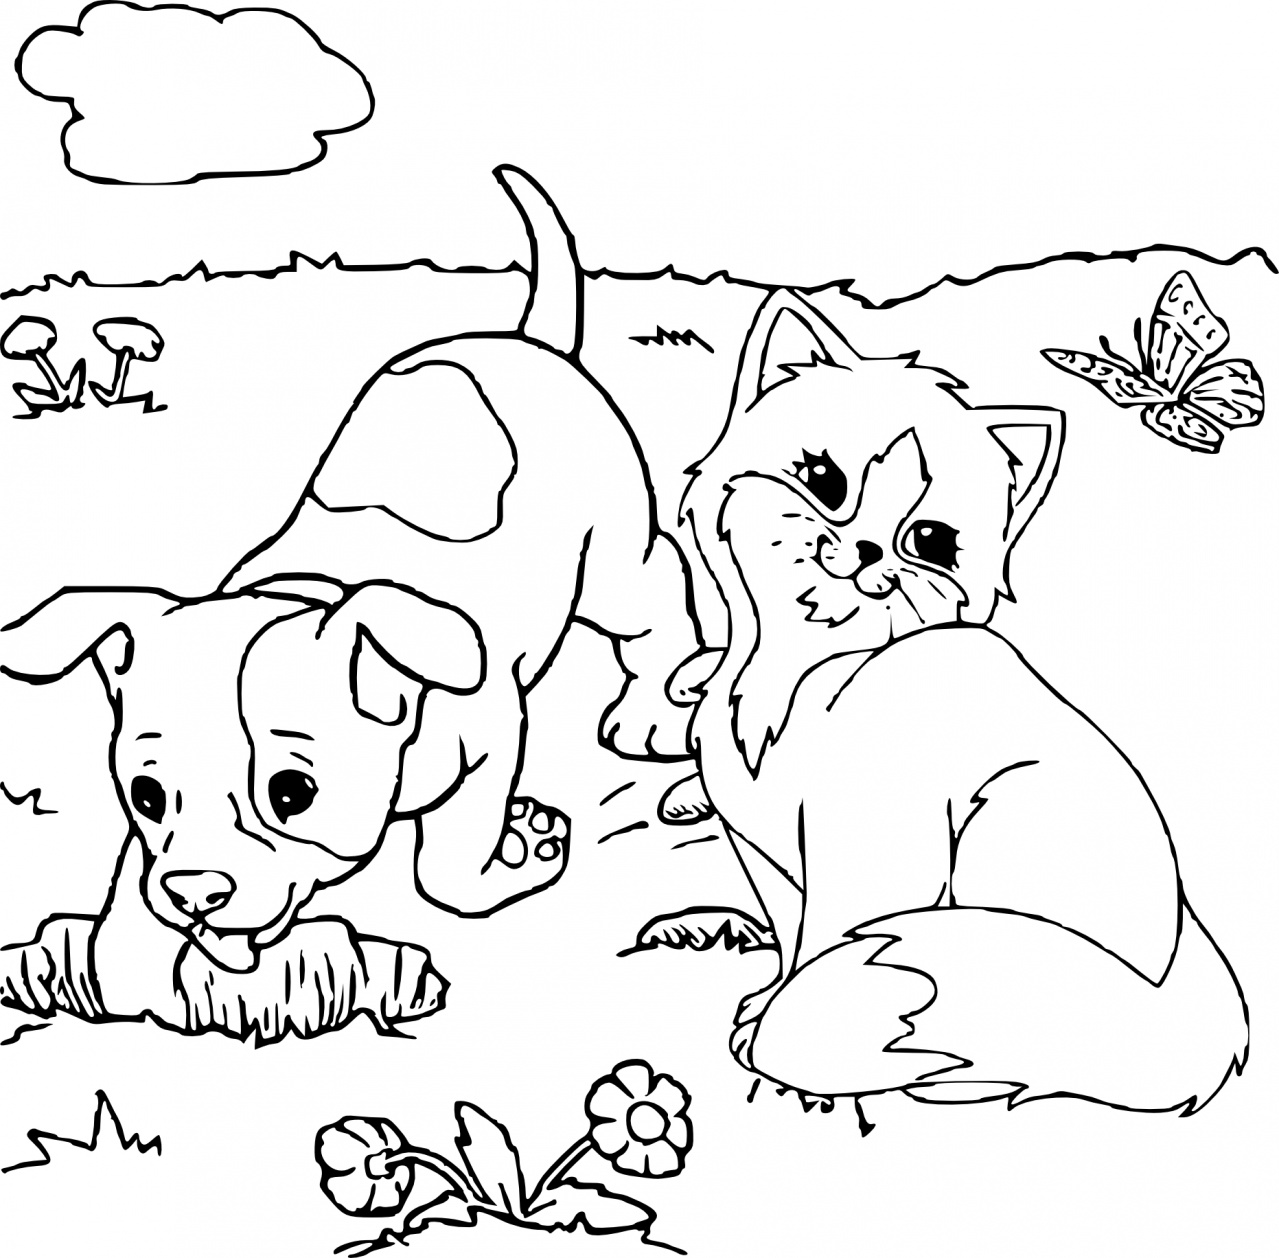 Раскраски котиков, кошечек и котят для детей скачать и распечатать бесплатно